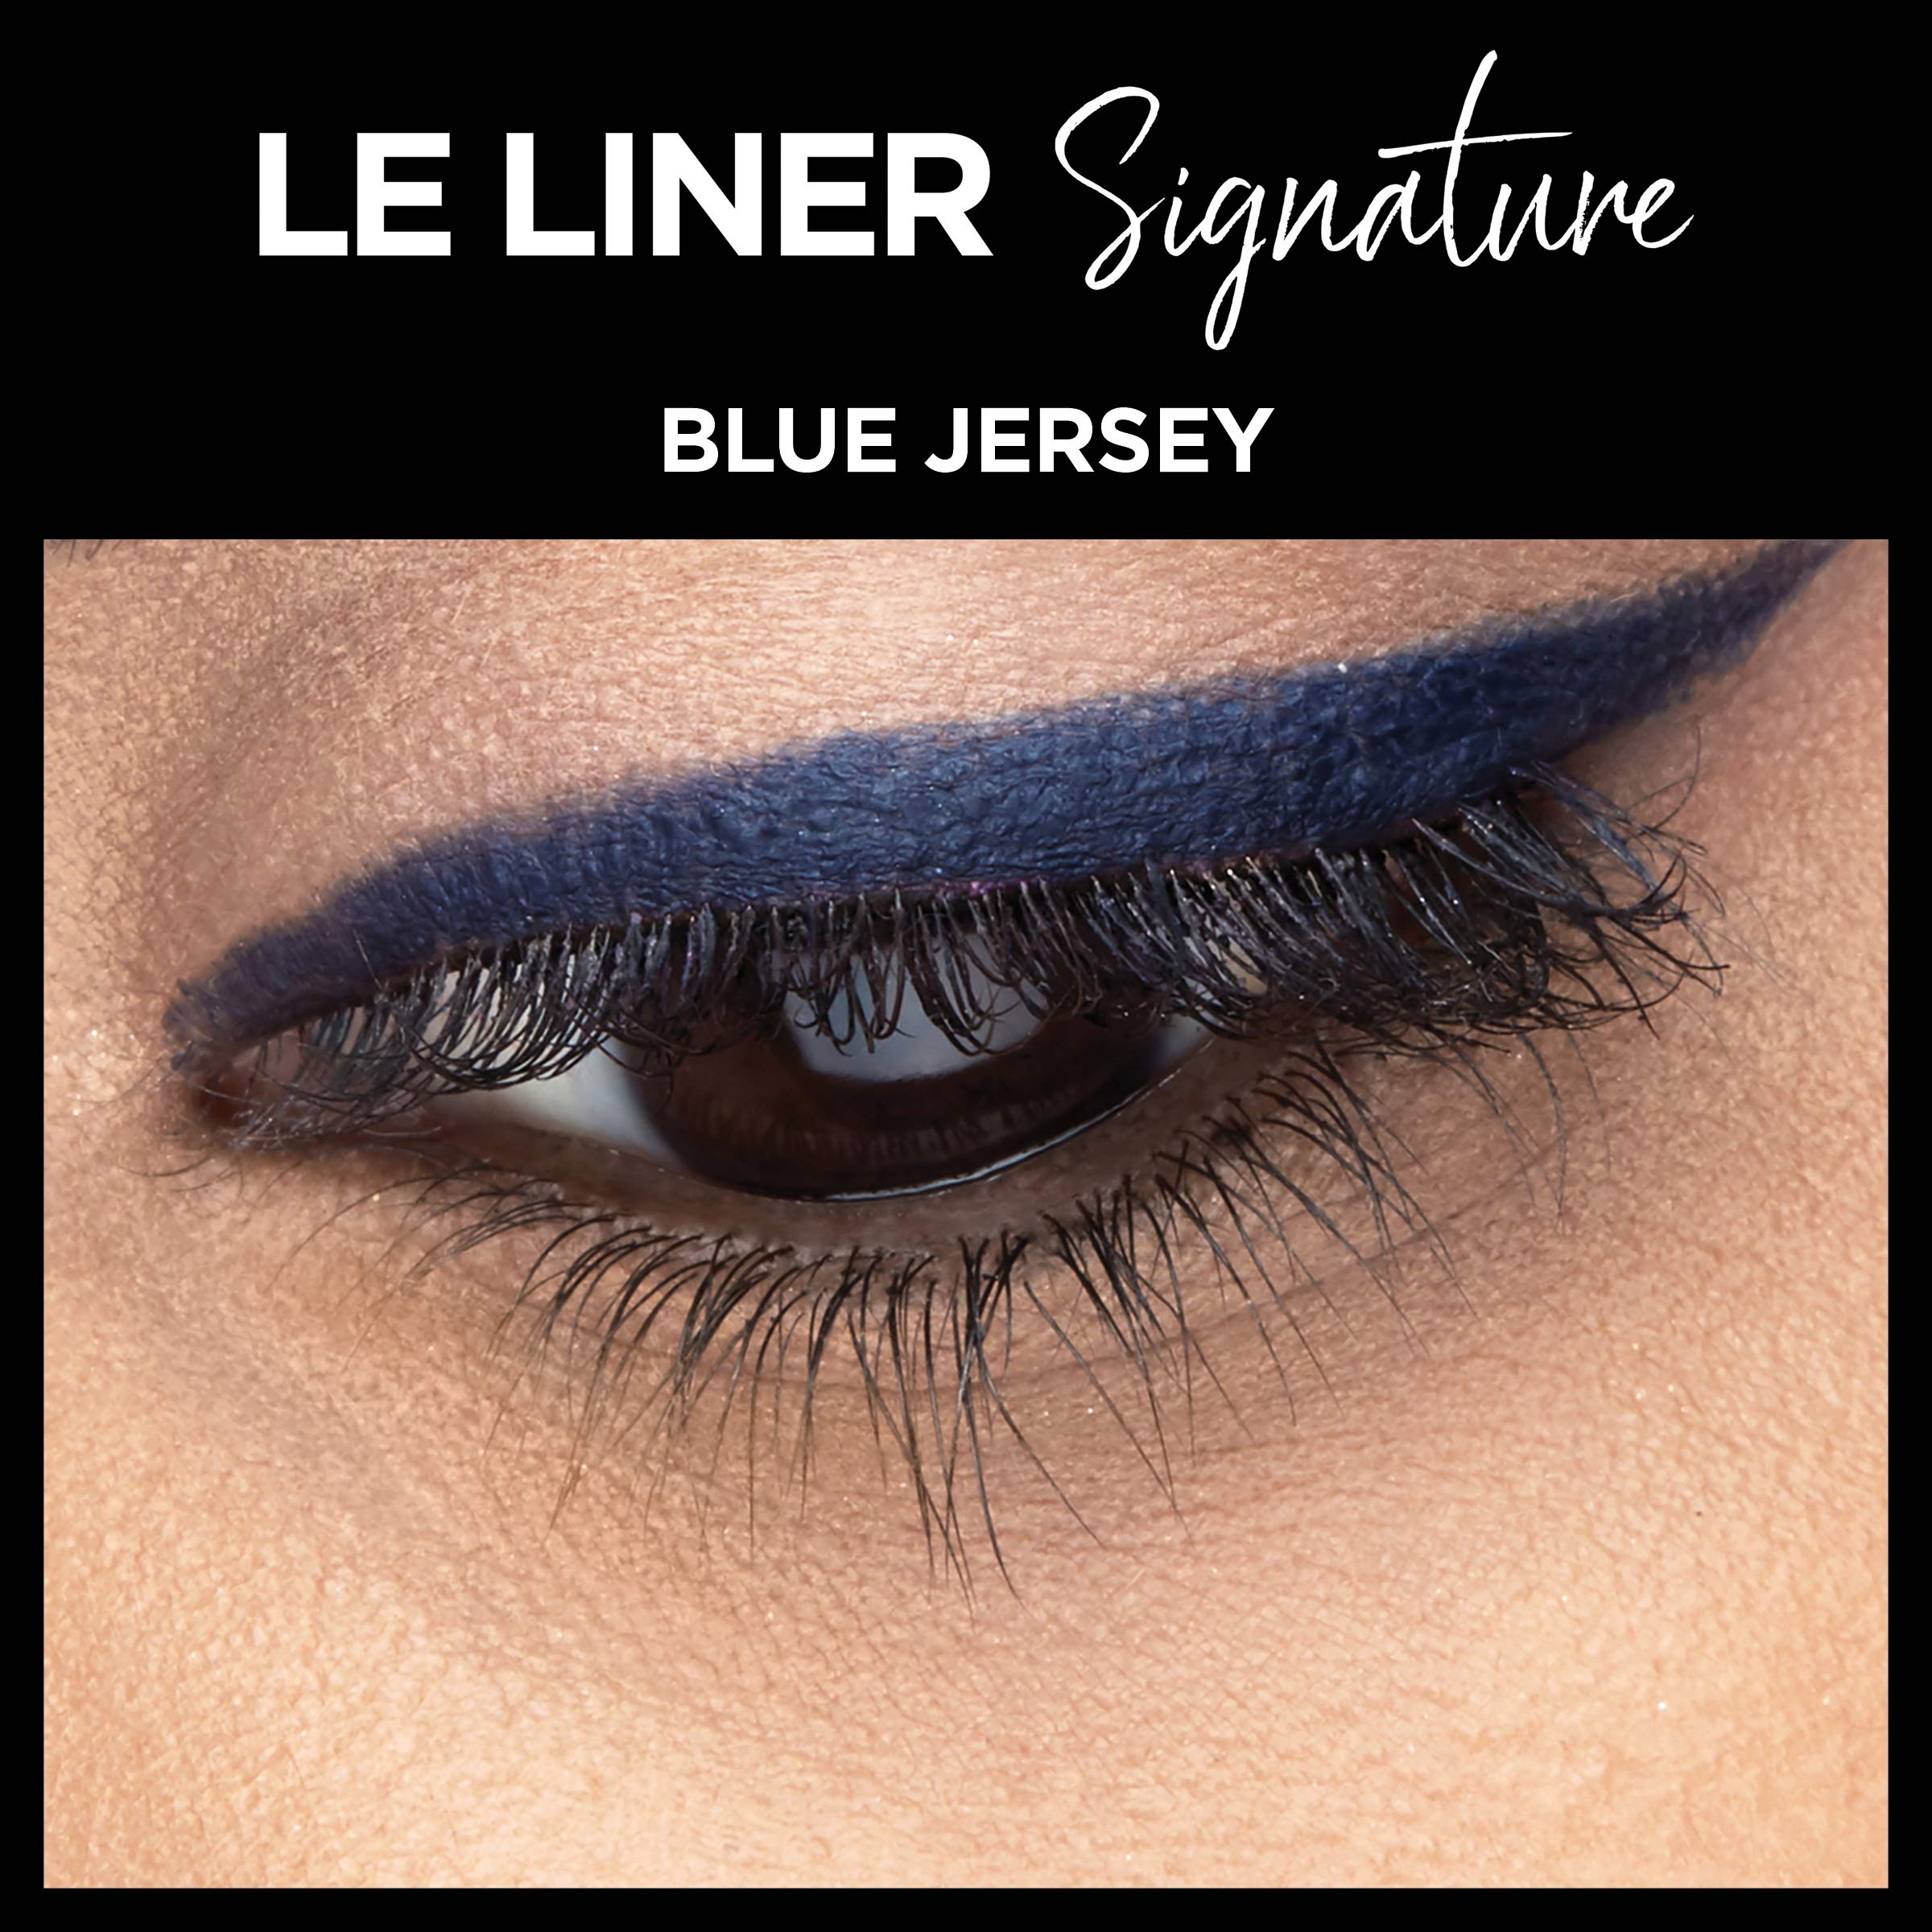 L'Oreal Paris Makeup Le Liner Signature Mechanical Eyeliner, Easy-Glide, Smudge Resistant, Bold Color, Long Lasting, Waterproof Eyeliner, Blue Jersey, 0.011 oz., 1 count